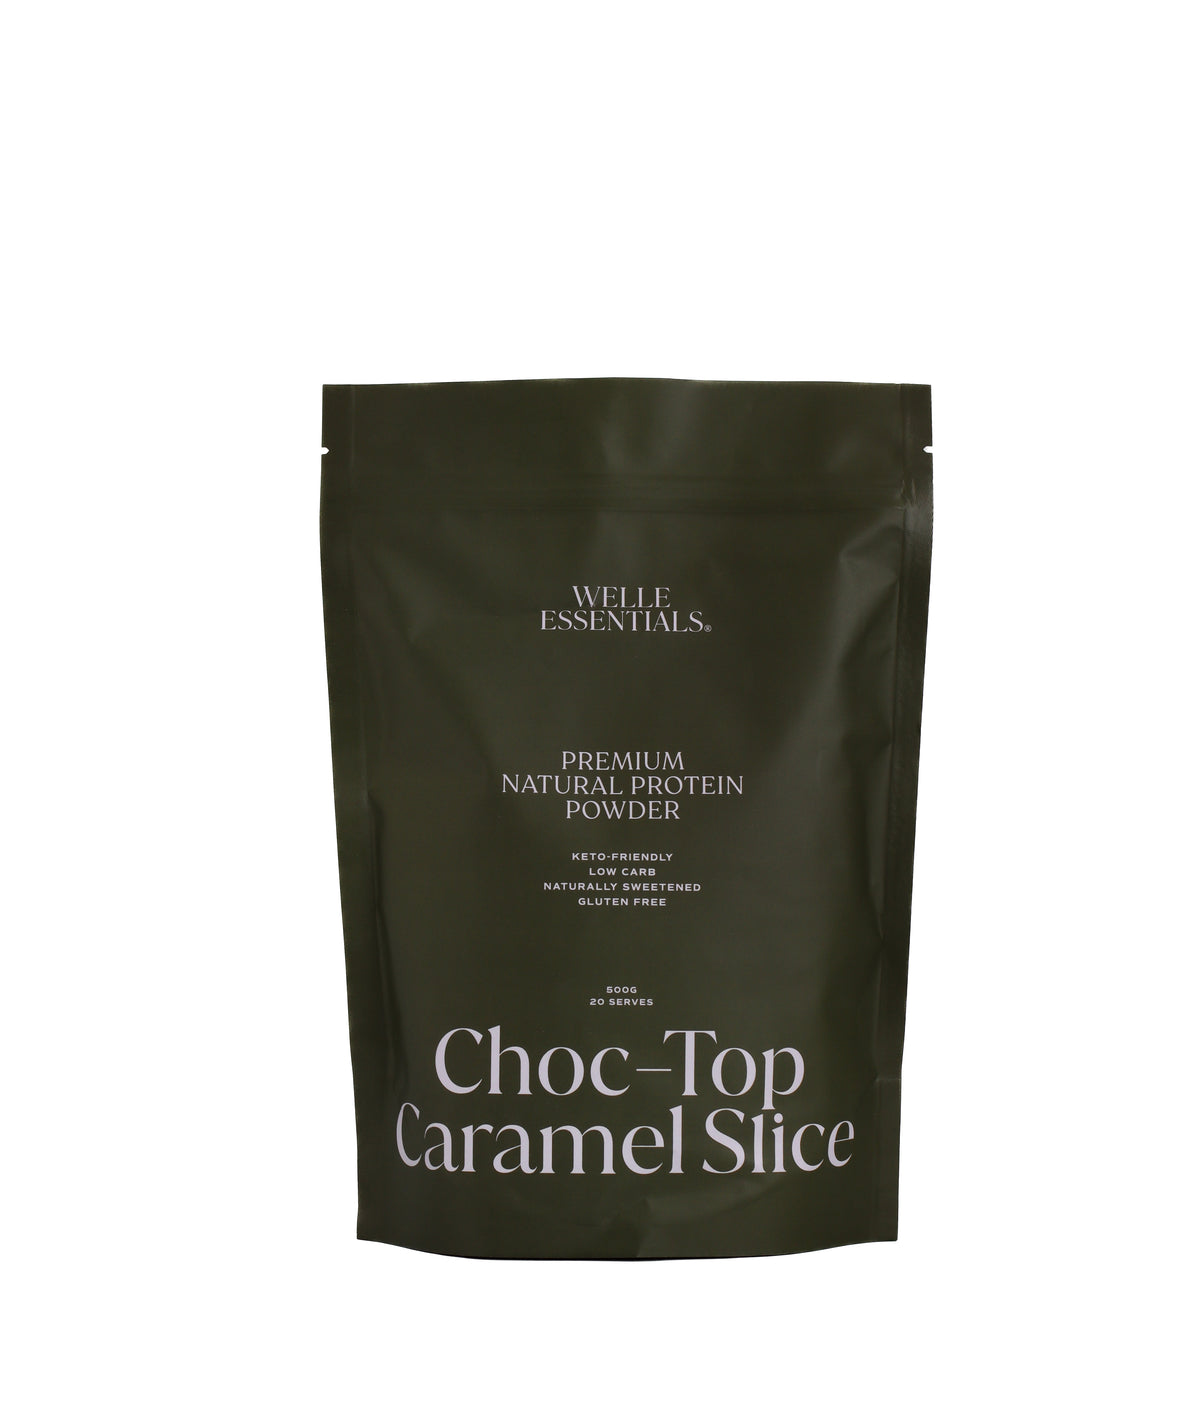 Premium Natural Protein - Choc-Top Caramel Slice